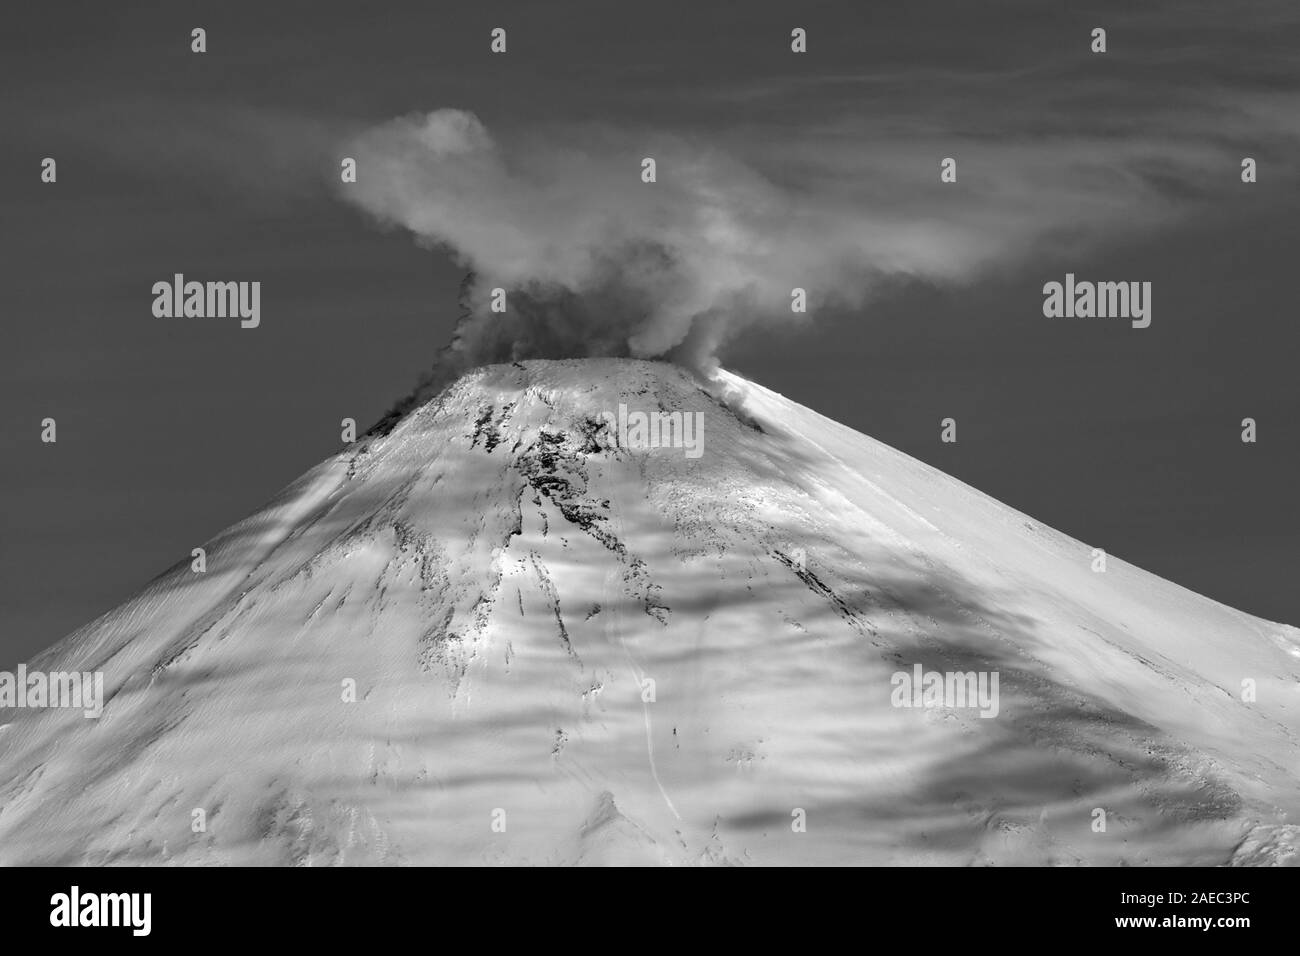 Vulcano Avachinskaya Sopka - attivo monte della penisola di Kamchatka. Inverno attività vulcanica del Monte: vapore acqueo, gas, eruzione di cenere dal cratere Foto Stock